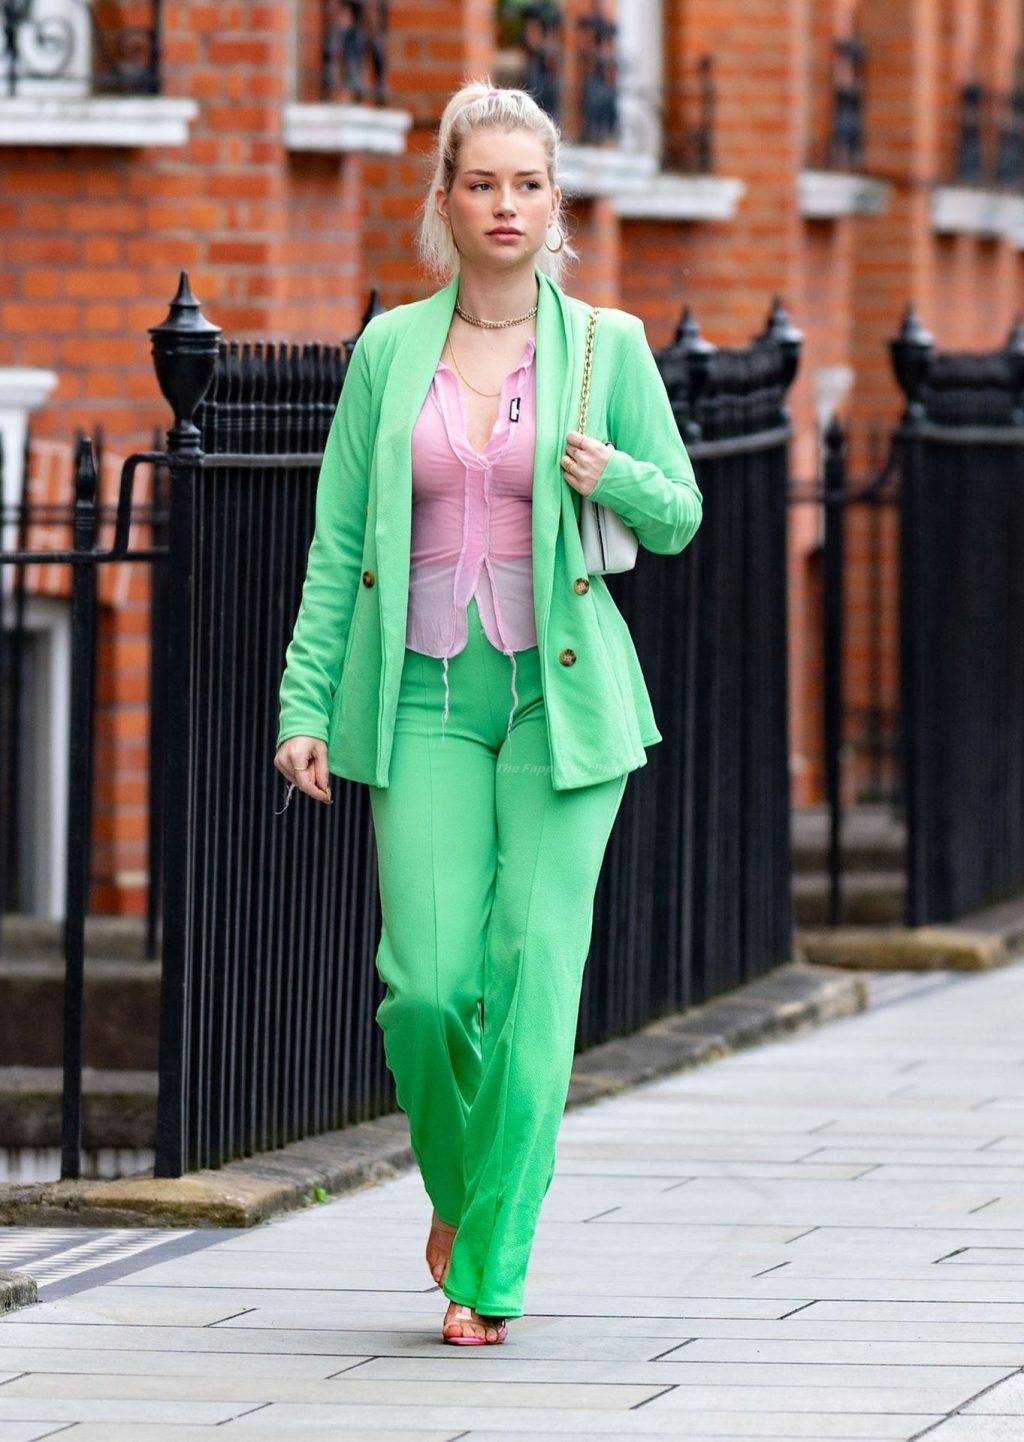 Lottie Moss Looks Chic in London (14 Photos)